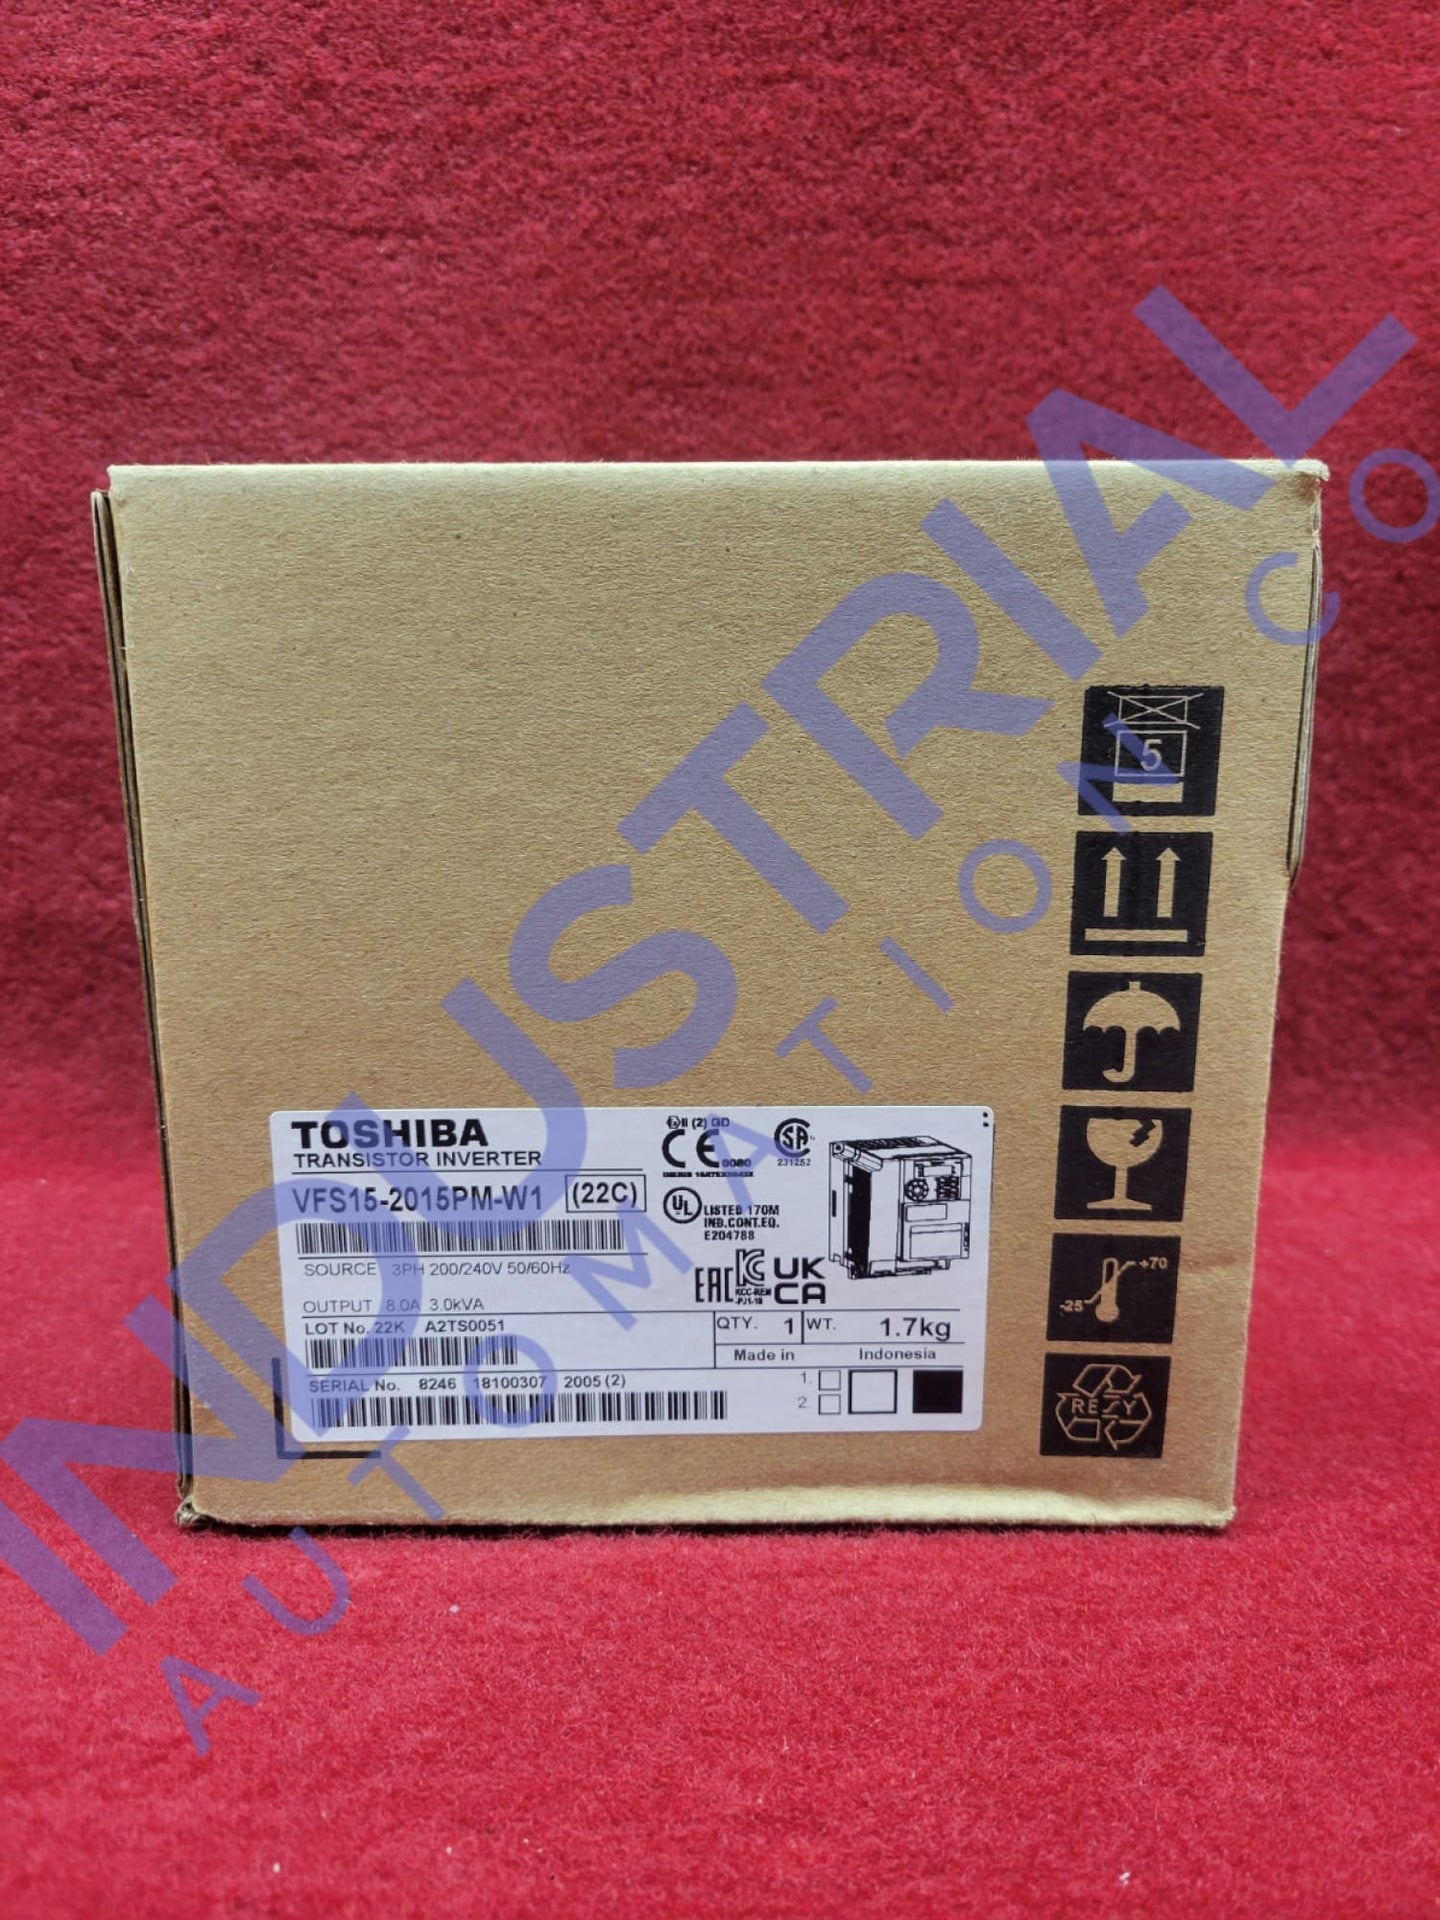 Toshiba Vfs15-2015Pm-W1